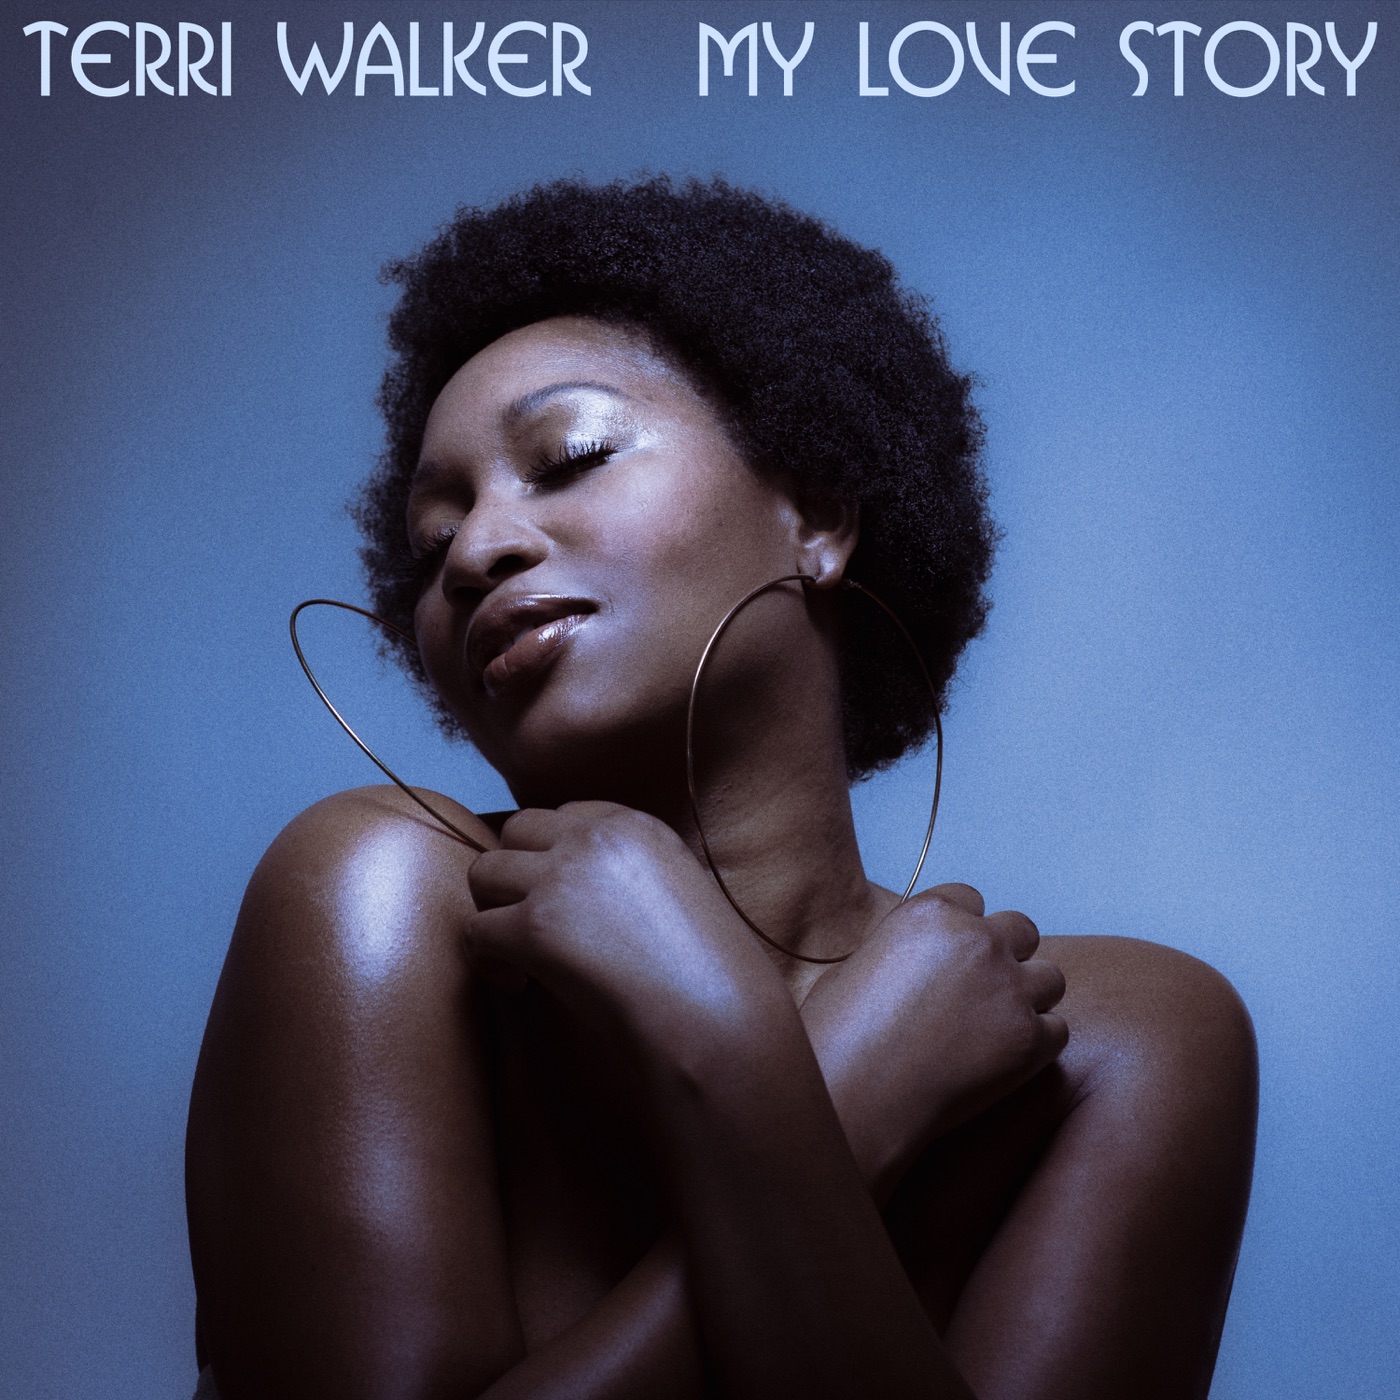 MY LOVE STORY by Terri Walker